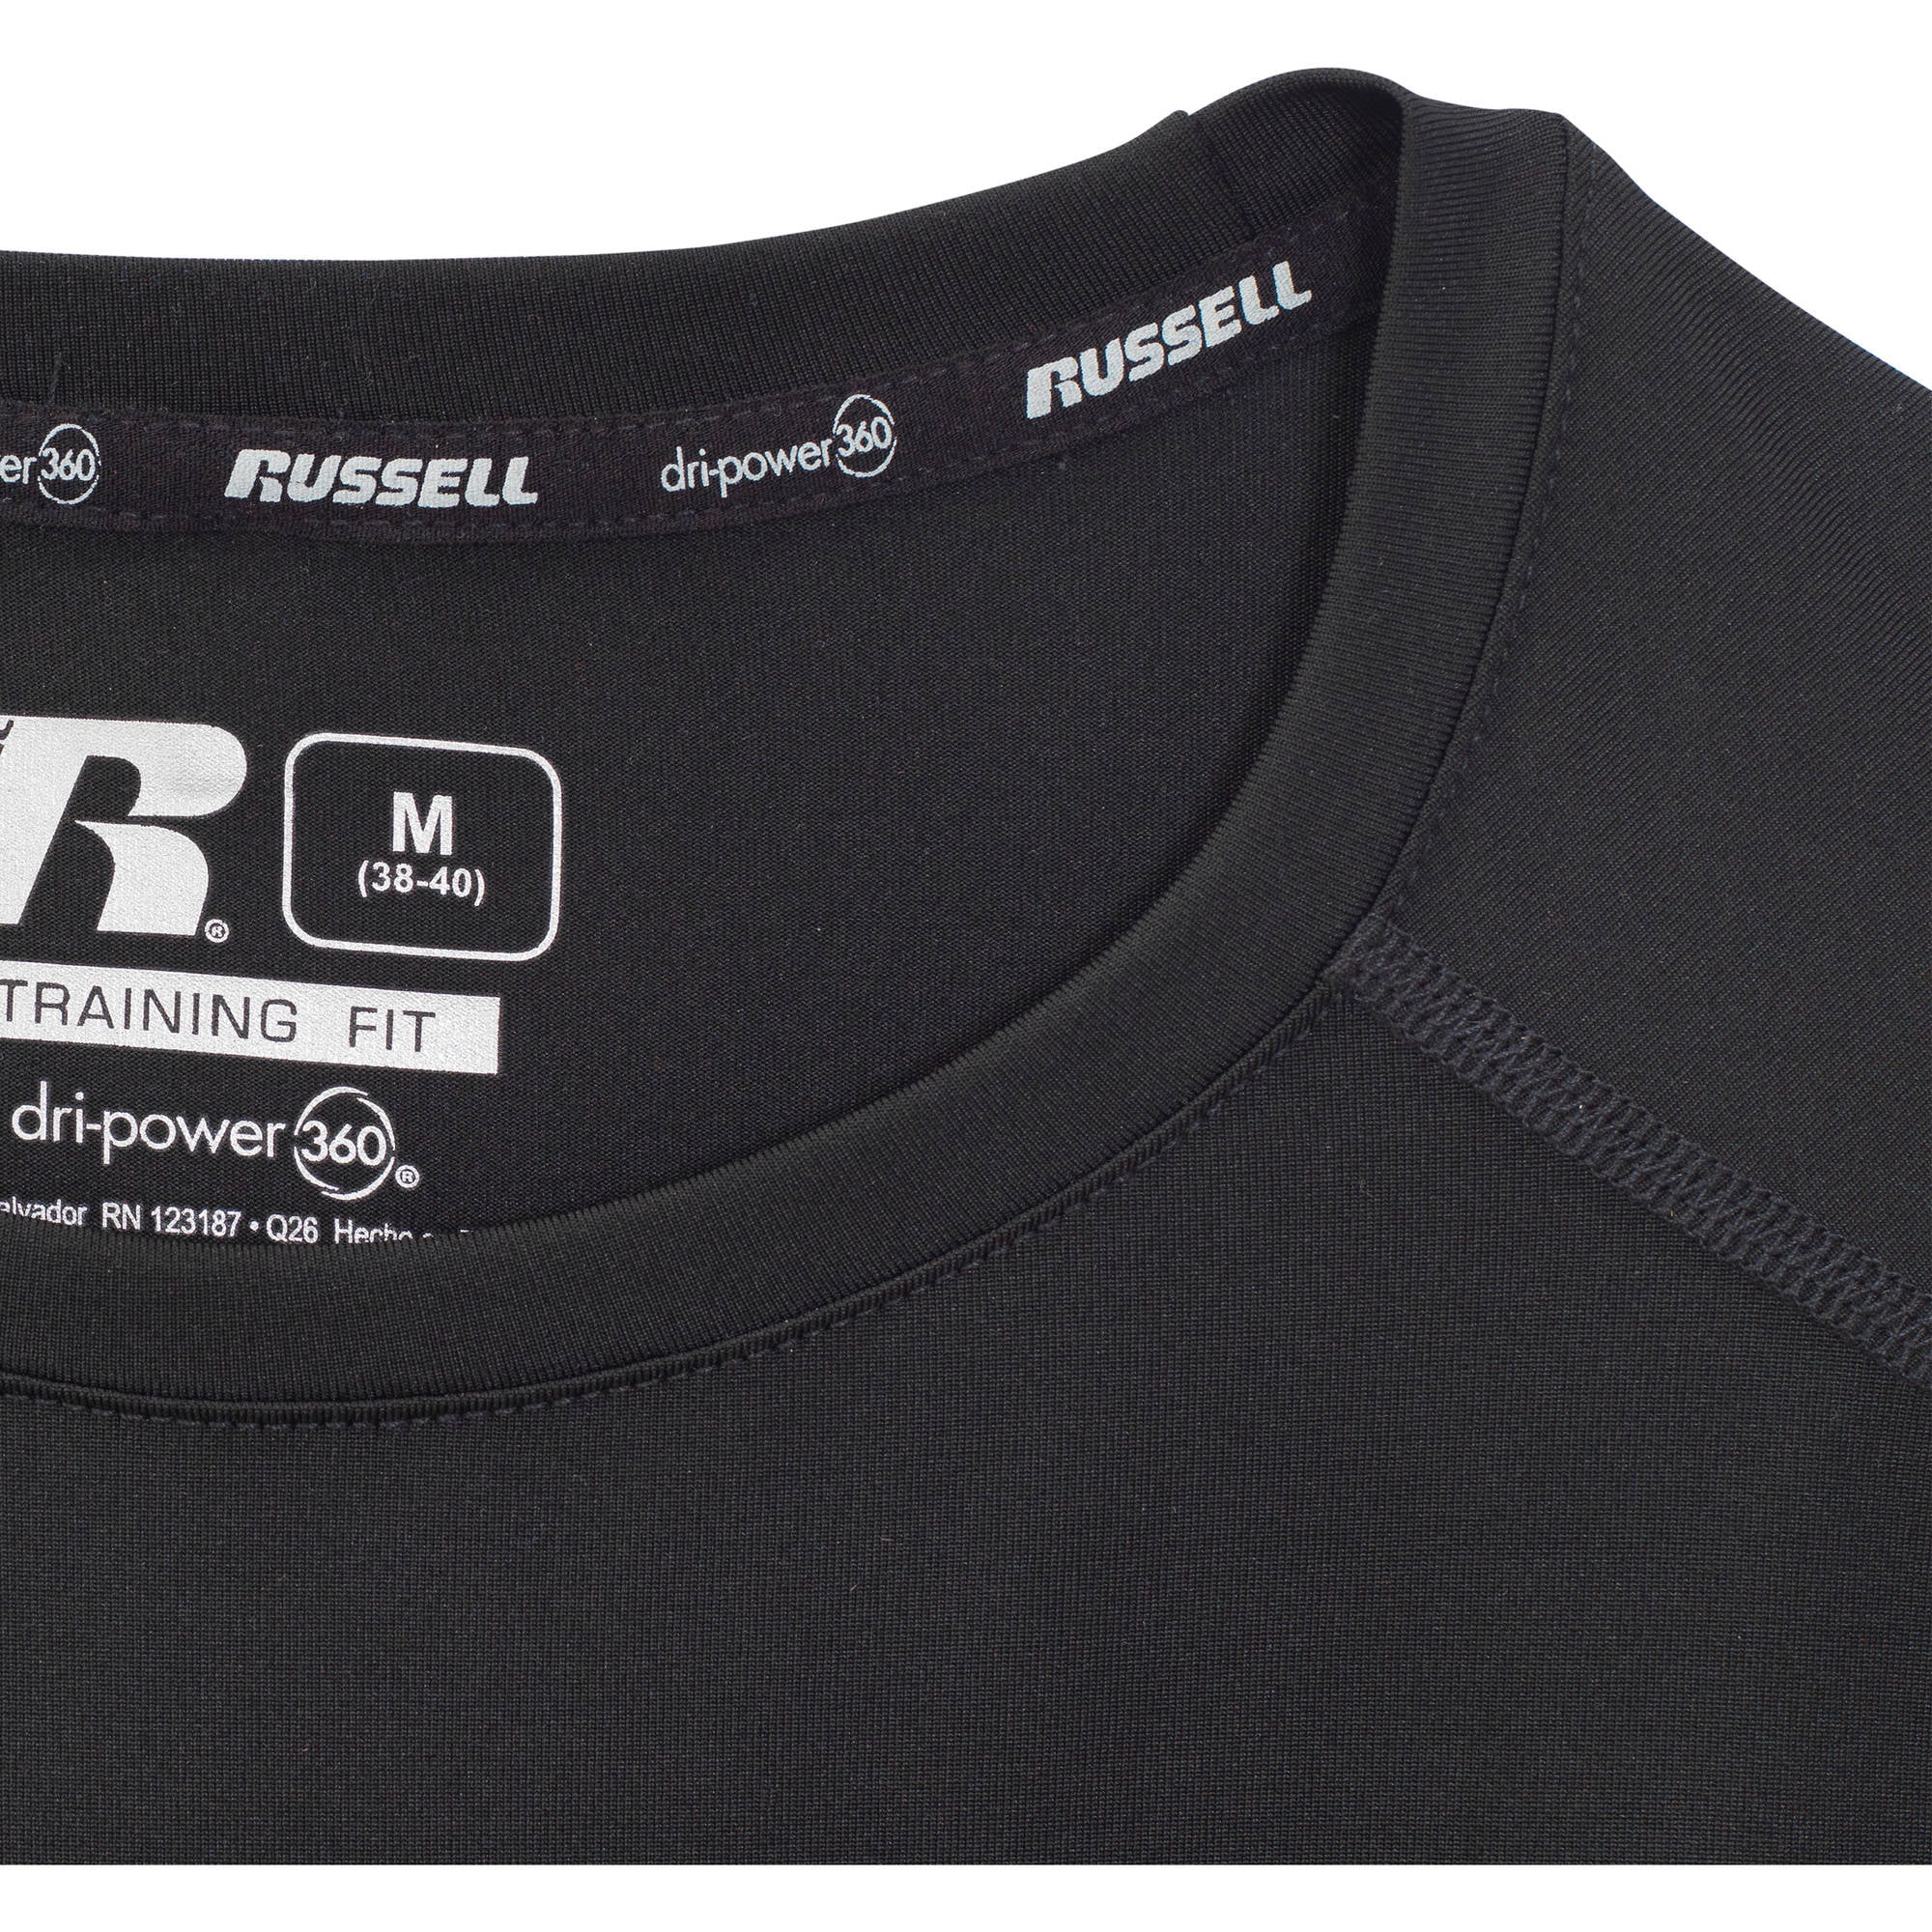 russell men's dri power 360 shirt